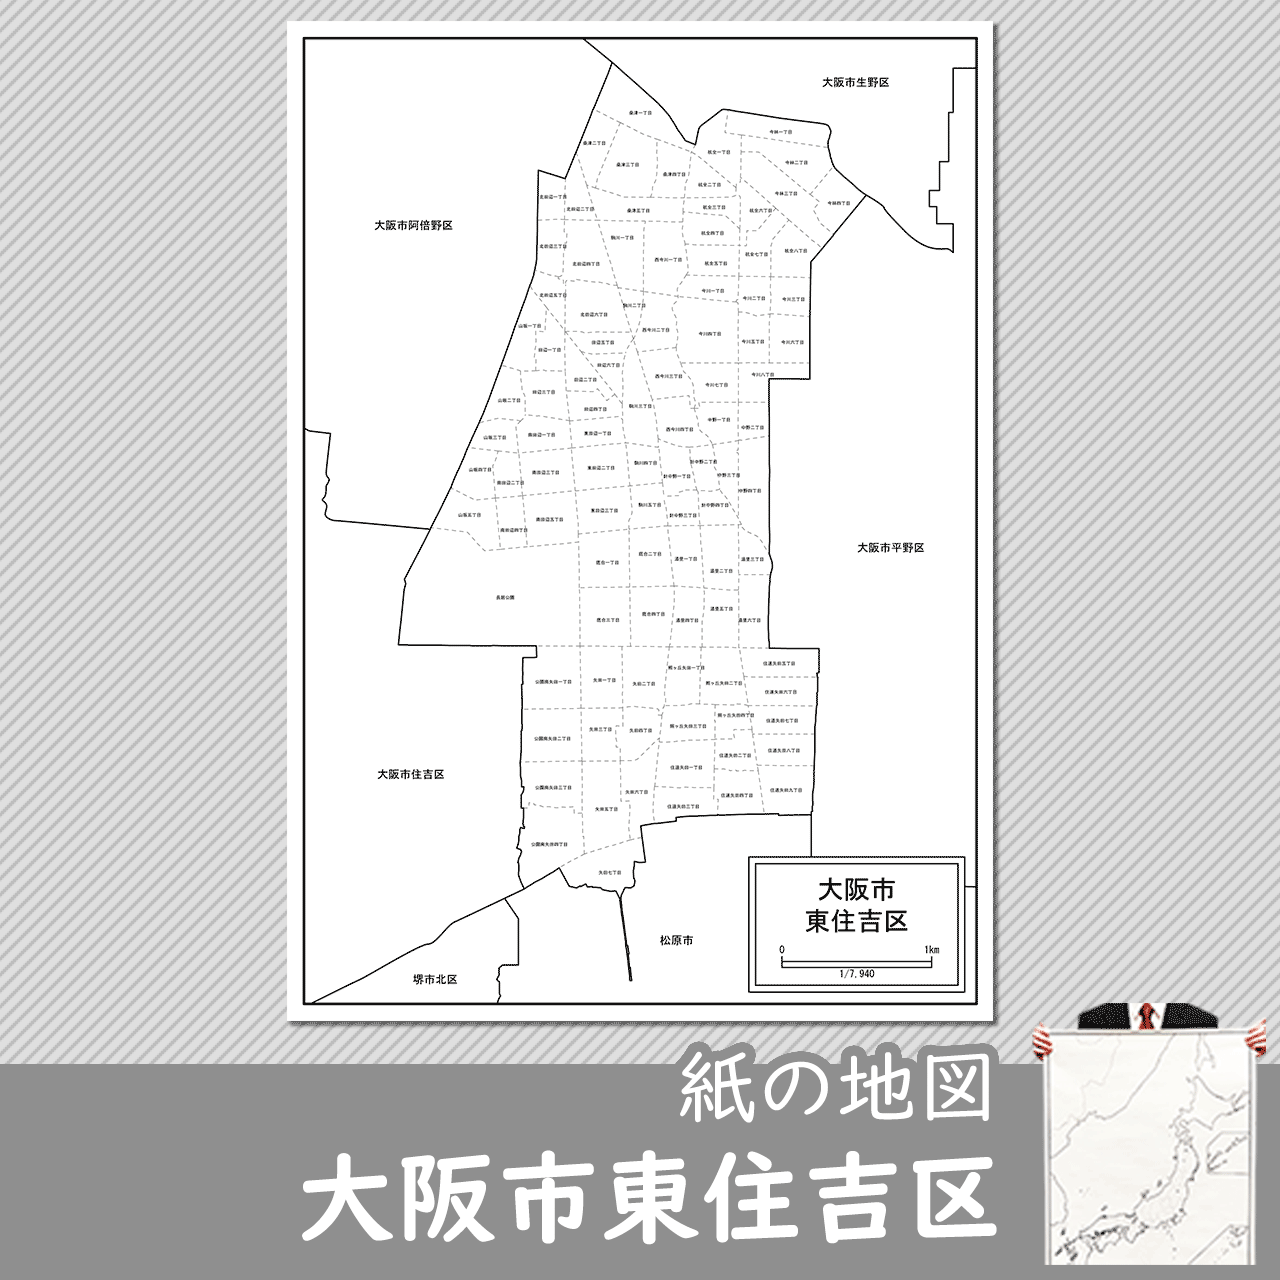 大阪市東住吉区の紙の白地図のサムネイル